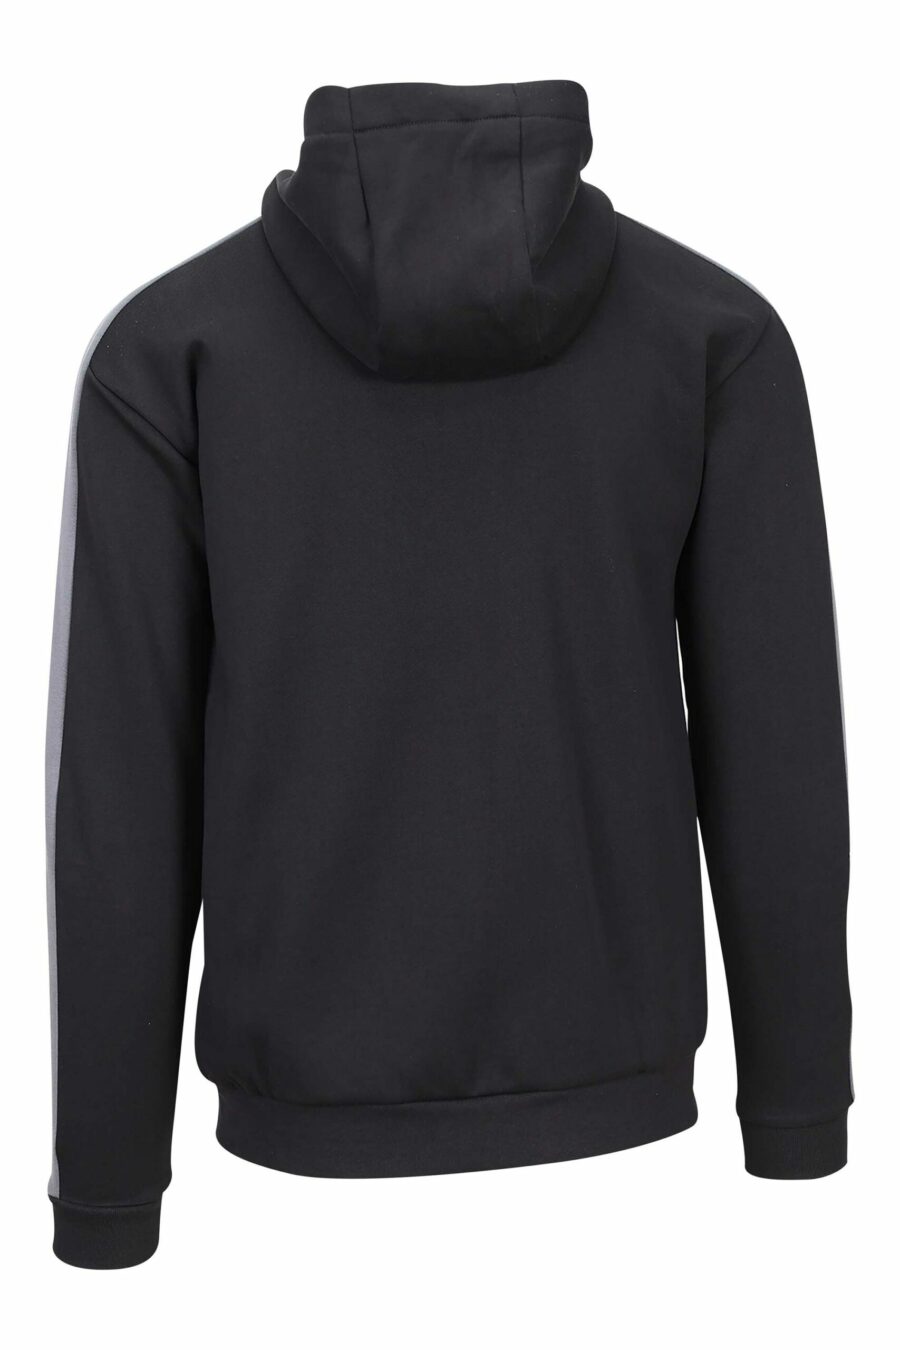 Schwarzes Kapuzensweatshirt mit grauen Linien und Minilog "lux identity" - 8057767628062 2 skaliert